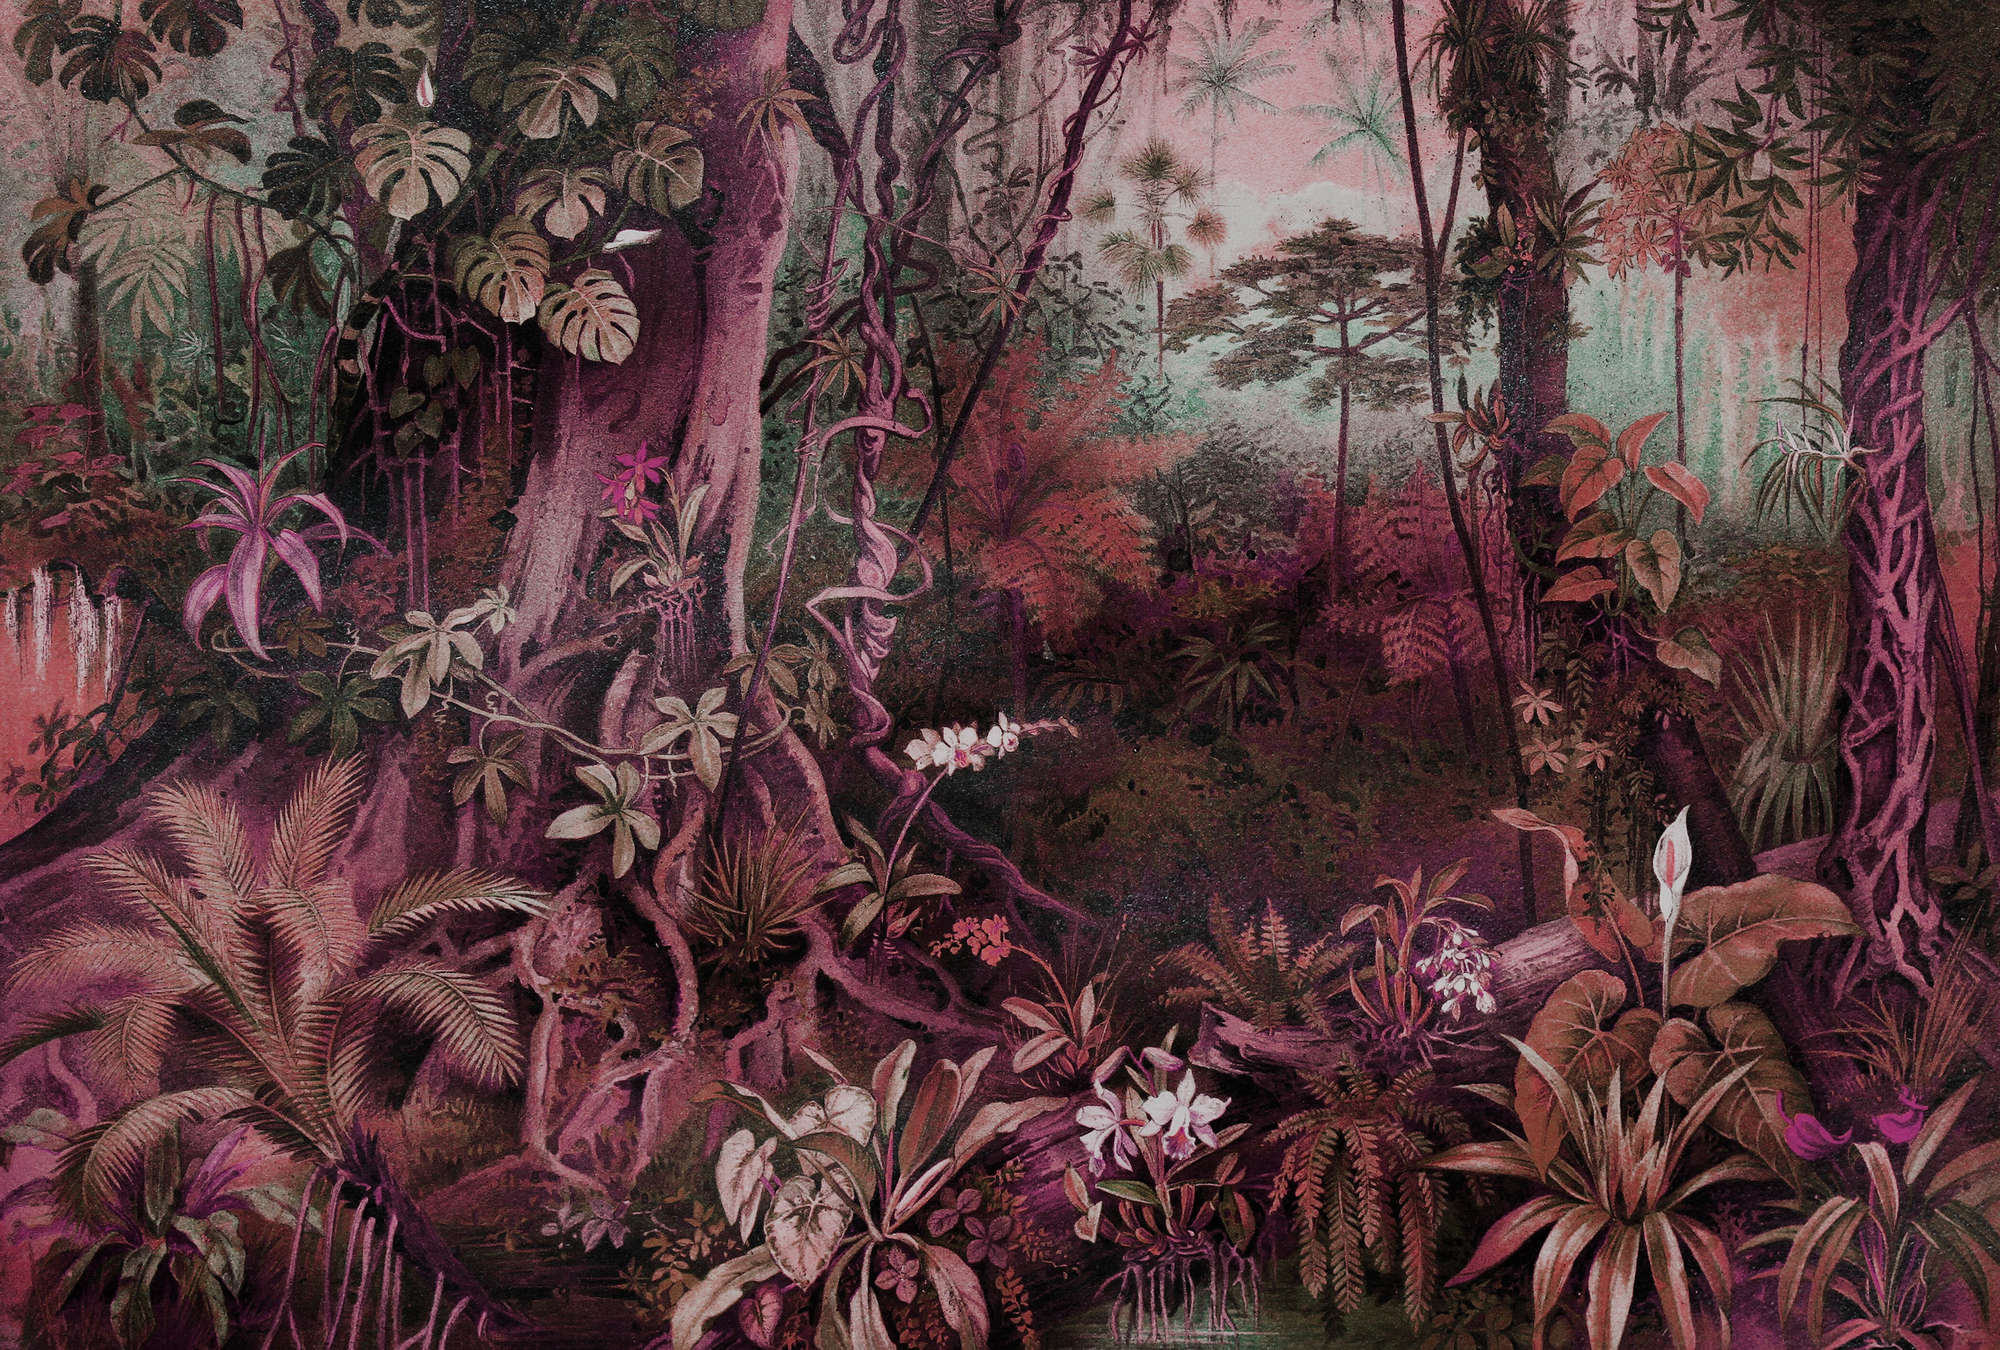             Jungle tekening stijl muurschildering - Paars, Groen
        